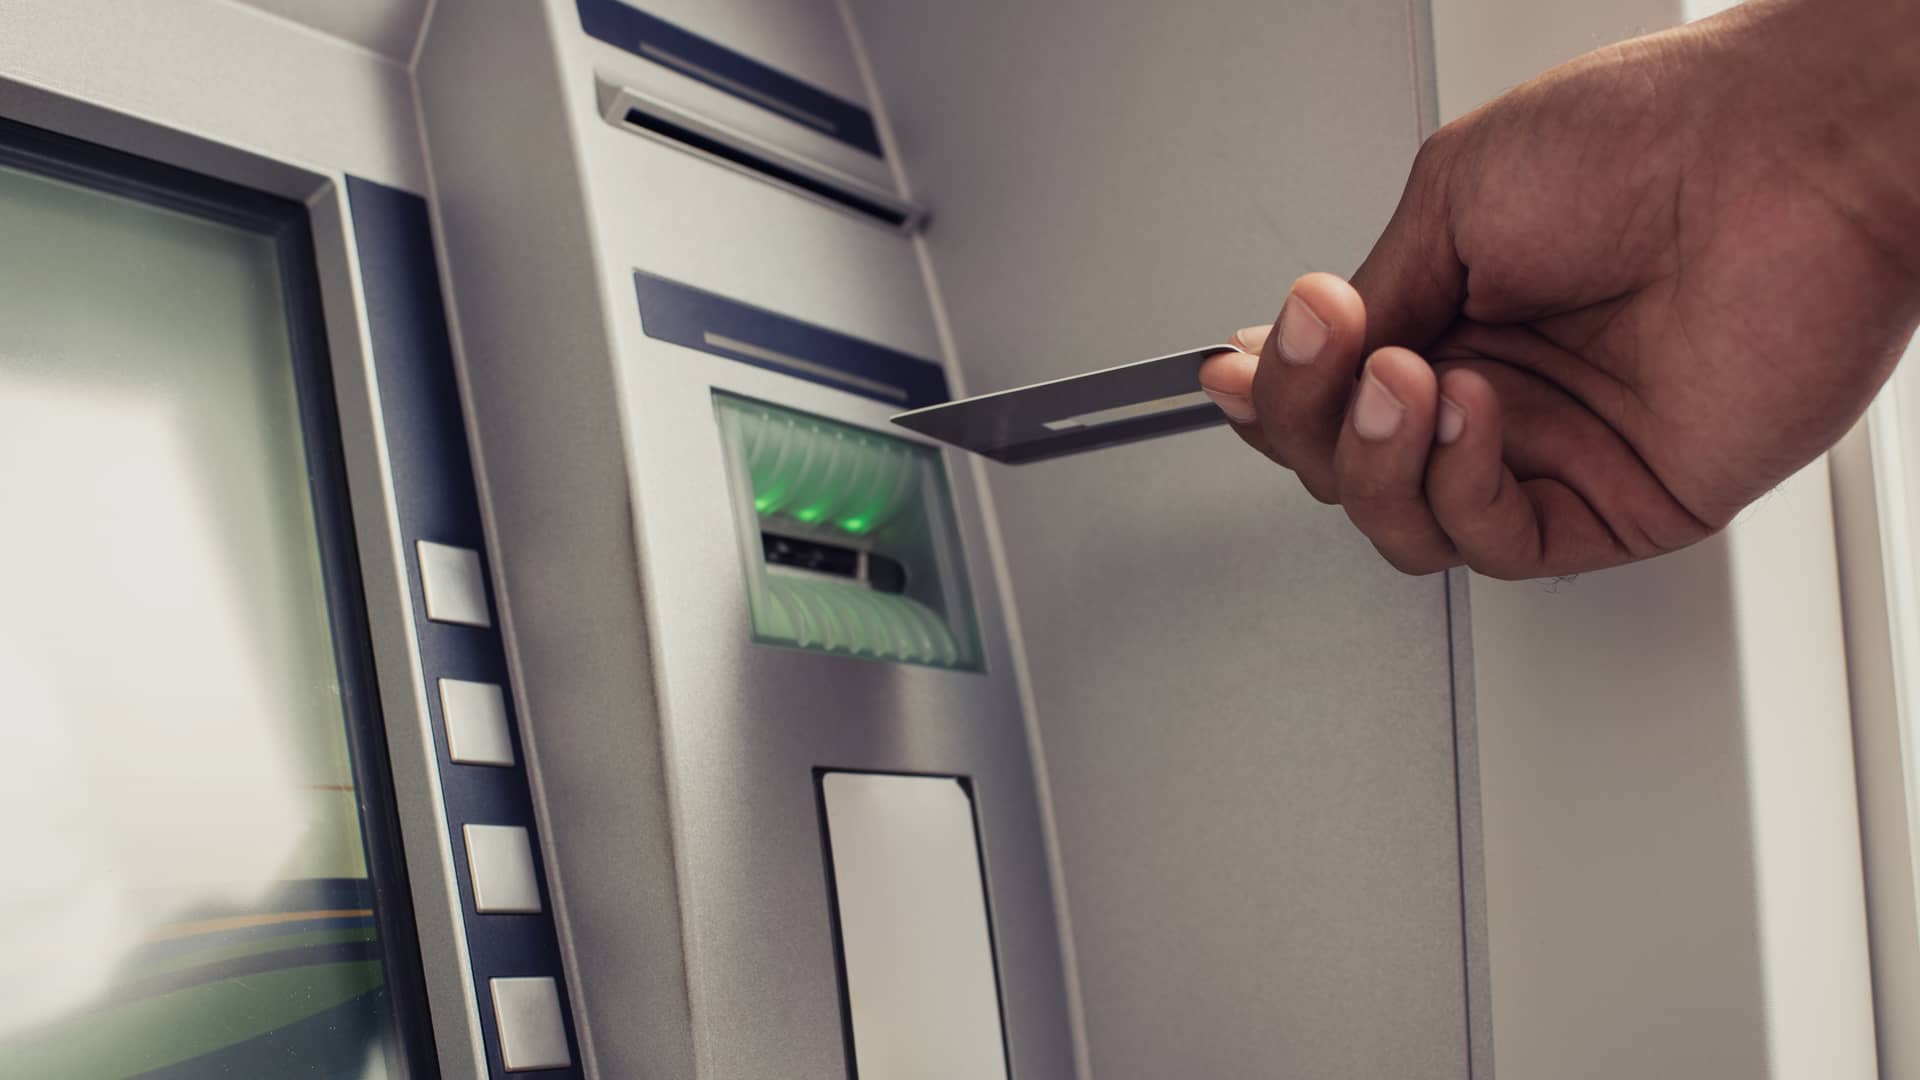 Persona introducinedo tarjeta de crédito en cajero automático de oficina cajamar